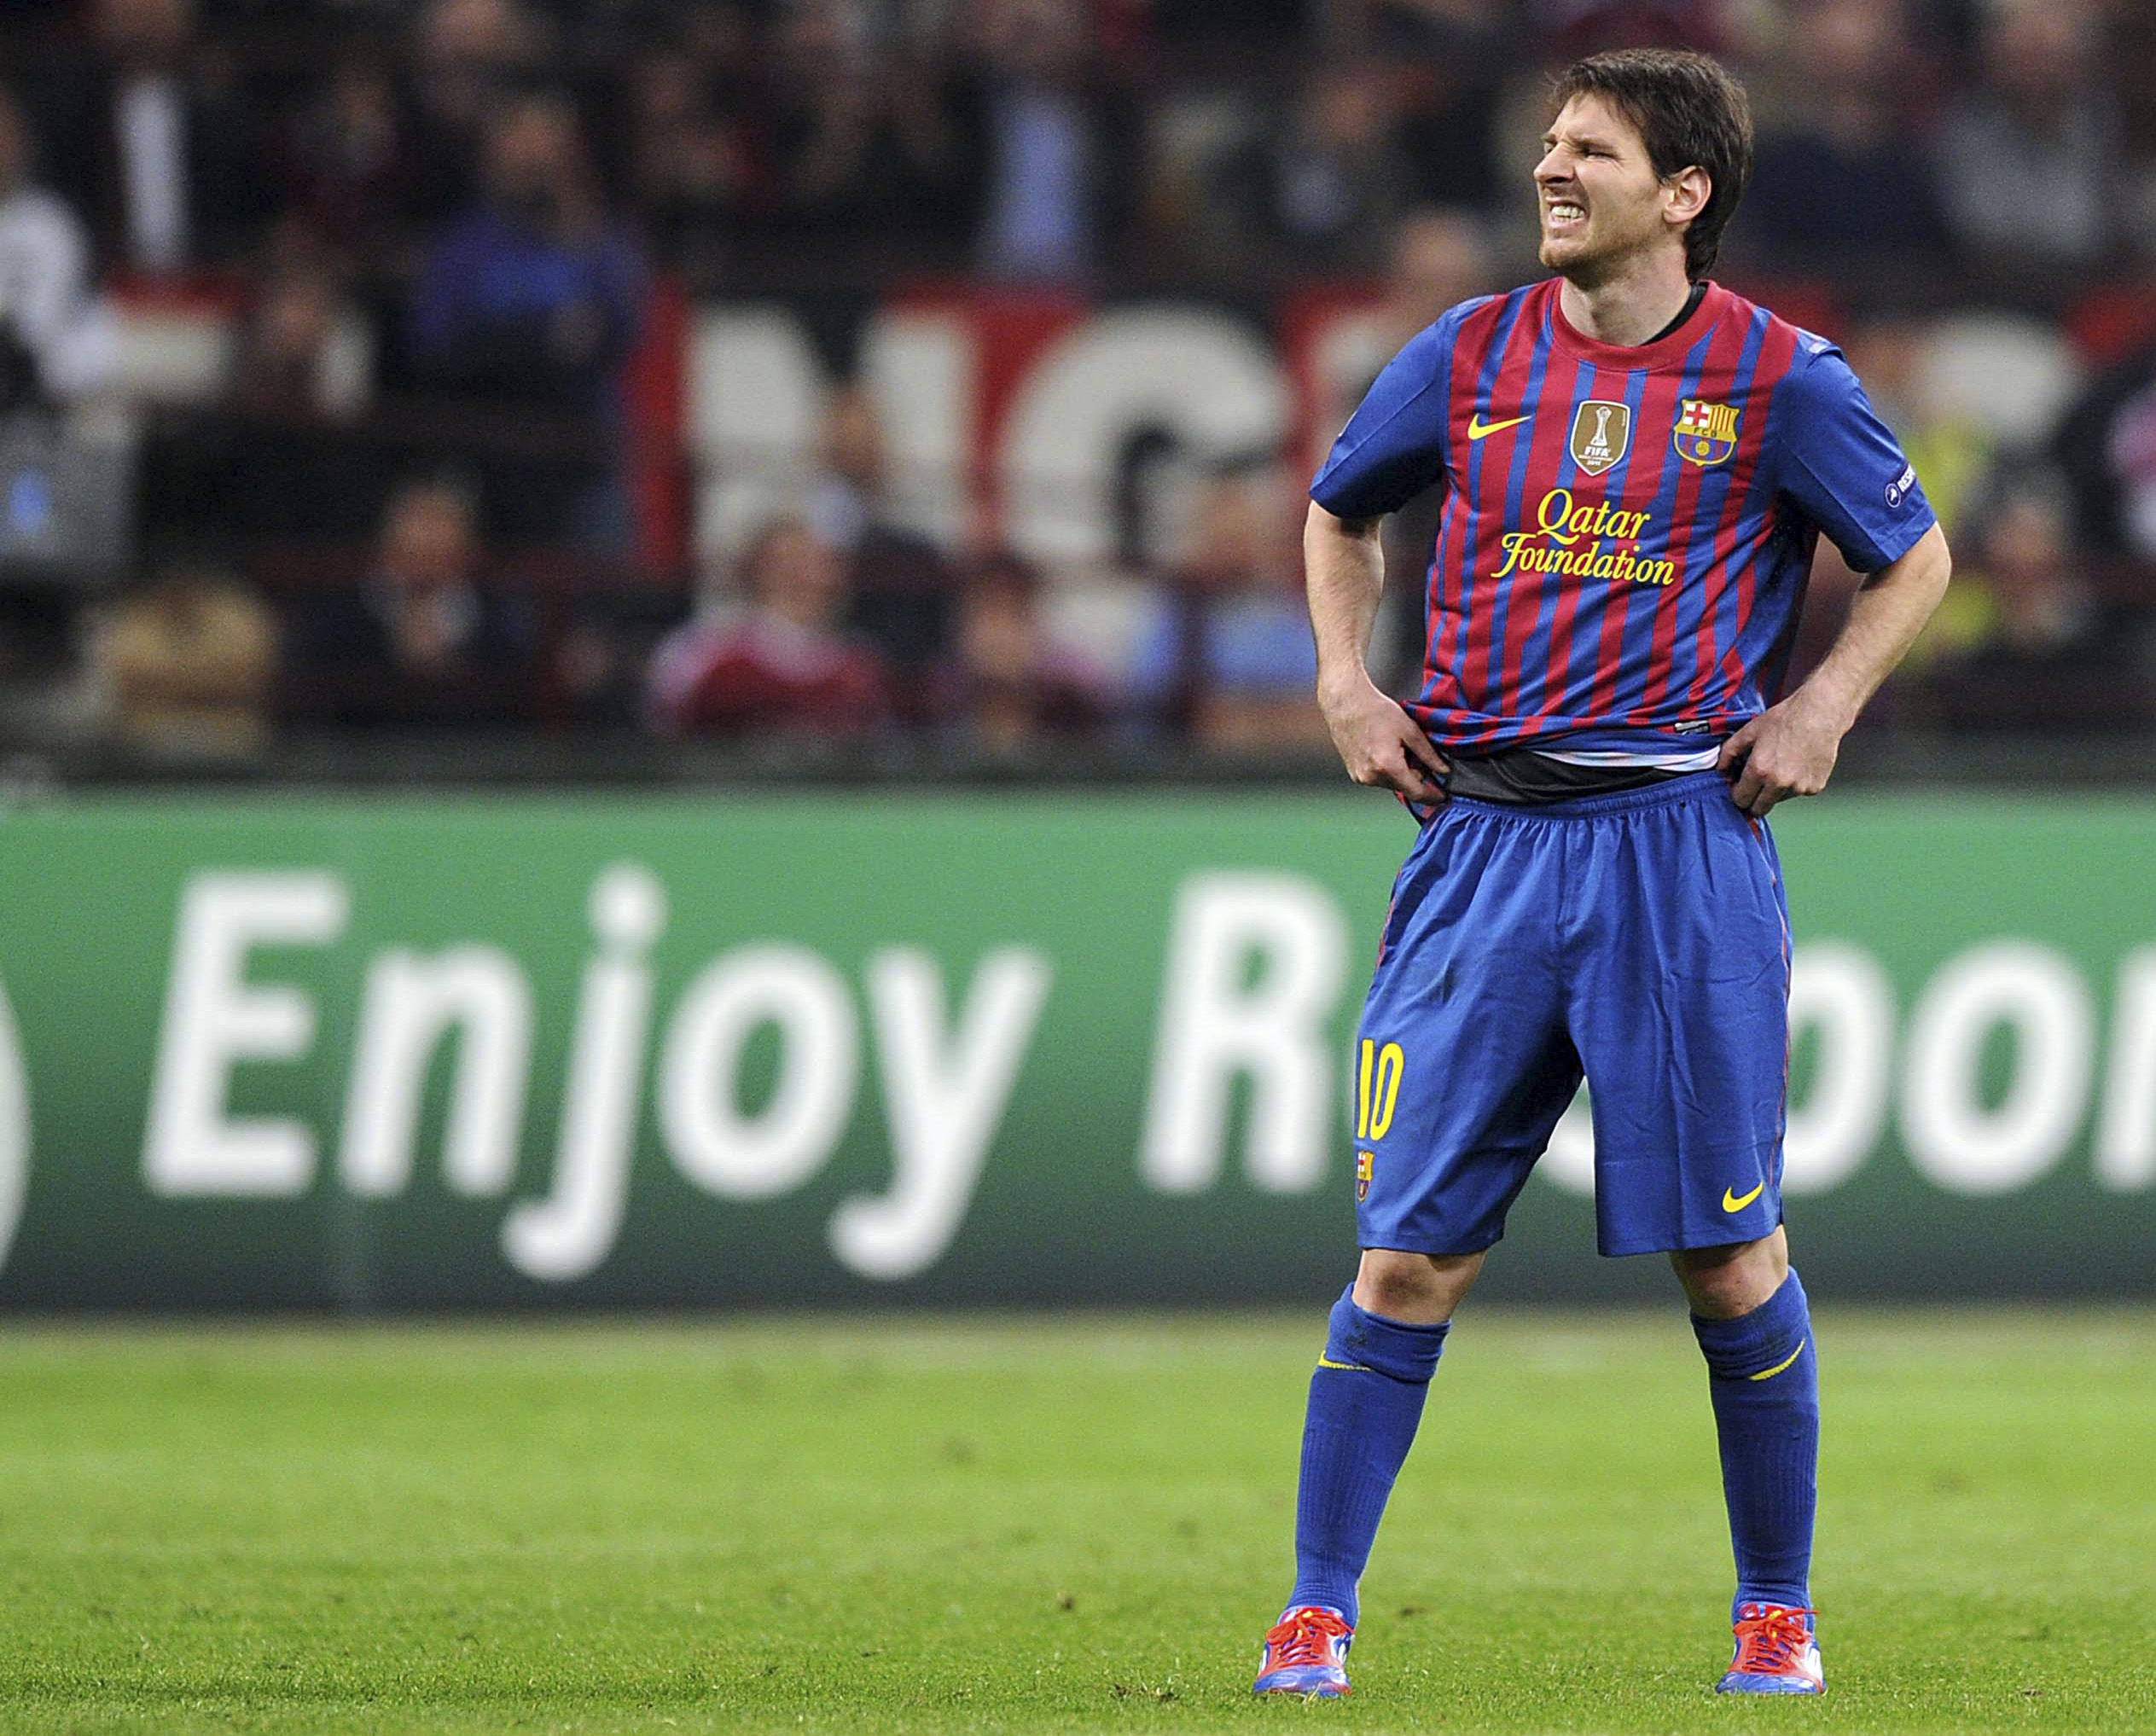 Lionel Messi lär vara revanschsugen - precis som Zlatan: "Jag kan inte vänta, jag vill spela nu", sa han till Viasat.